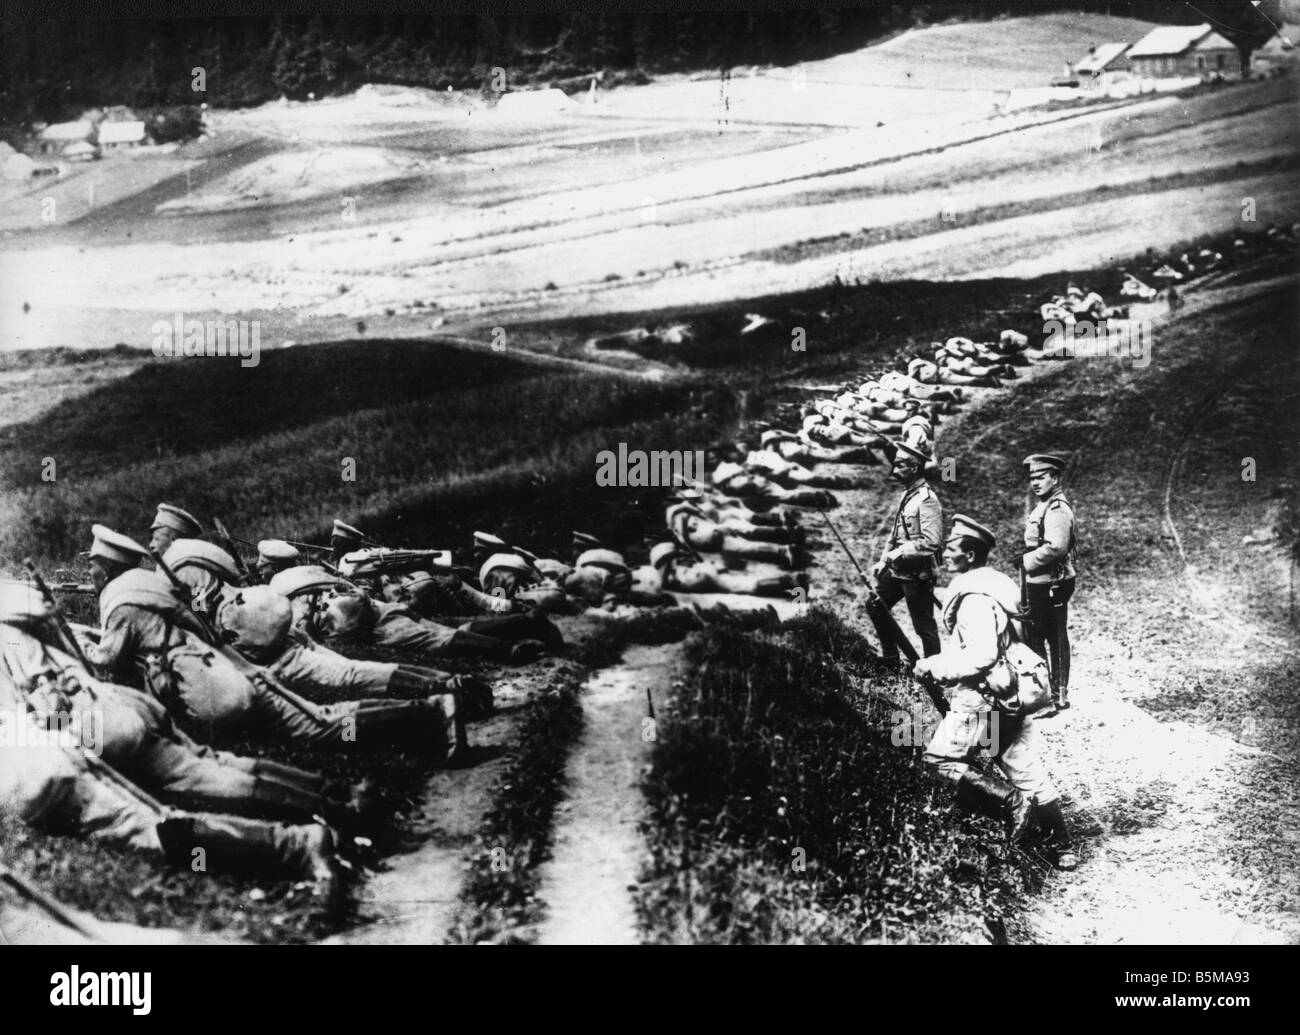 2 G55 R2 1914 Russische Infanterie in Stellung Foto Russland erste Weltkrieg Russische Infanterie in Stellung Foto 1914 Stockfoto